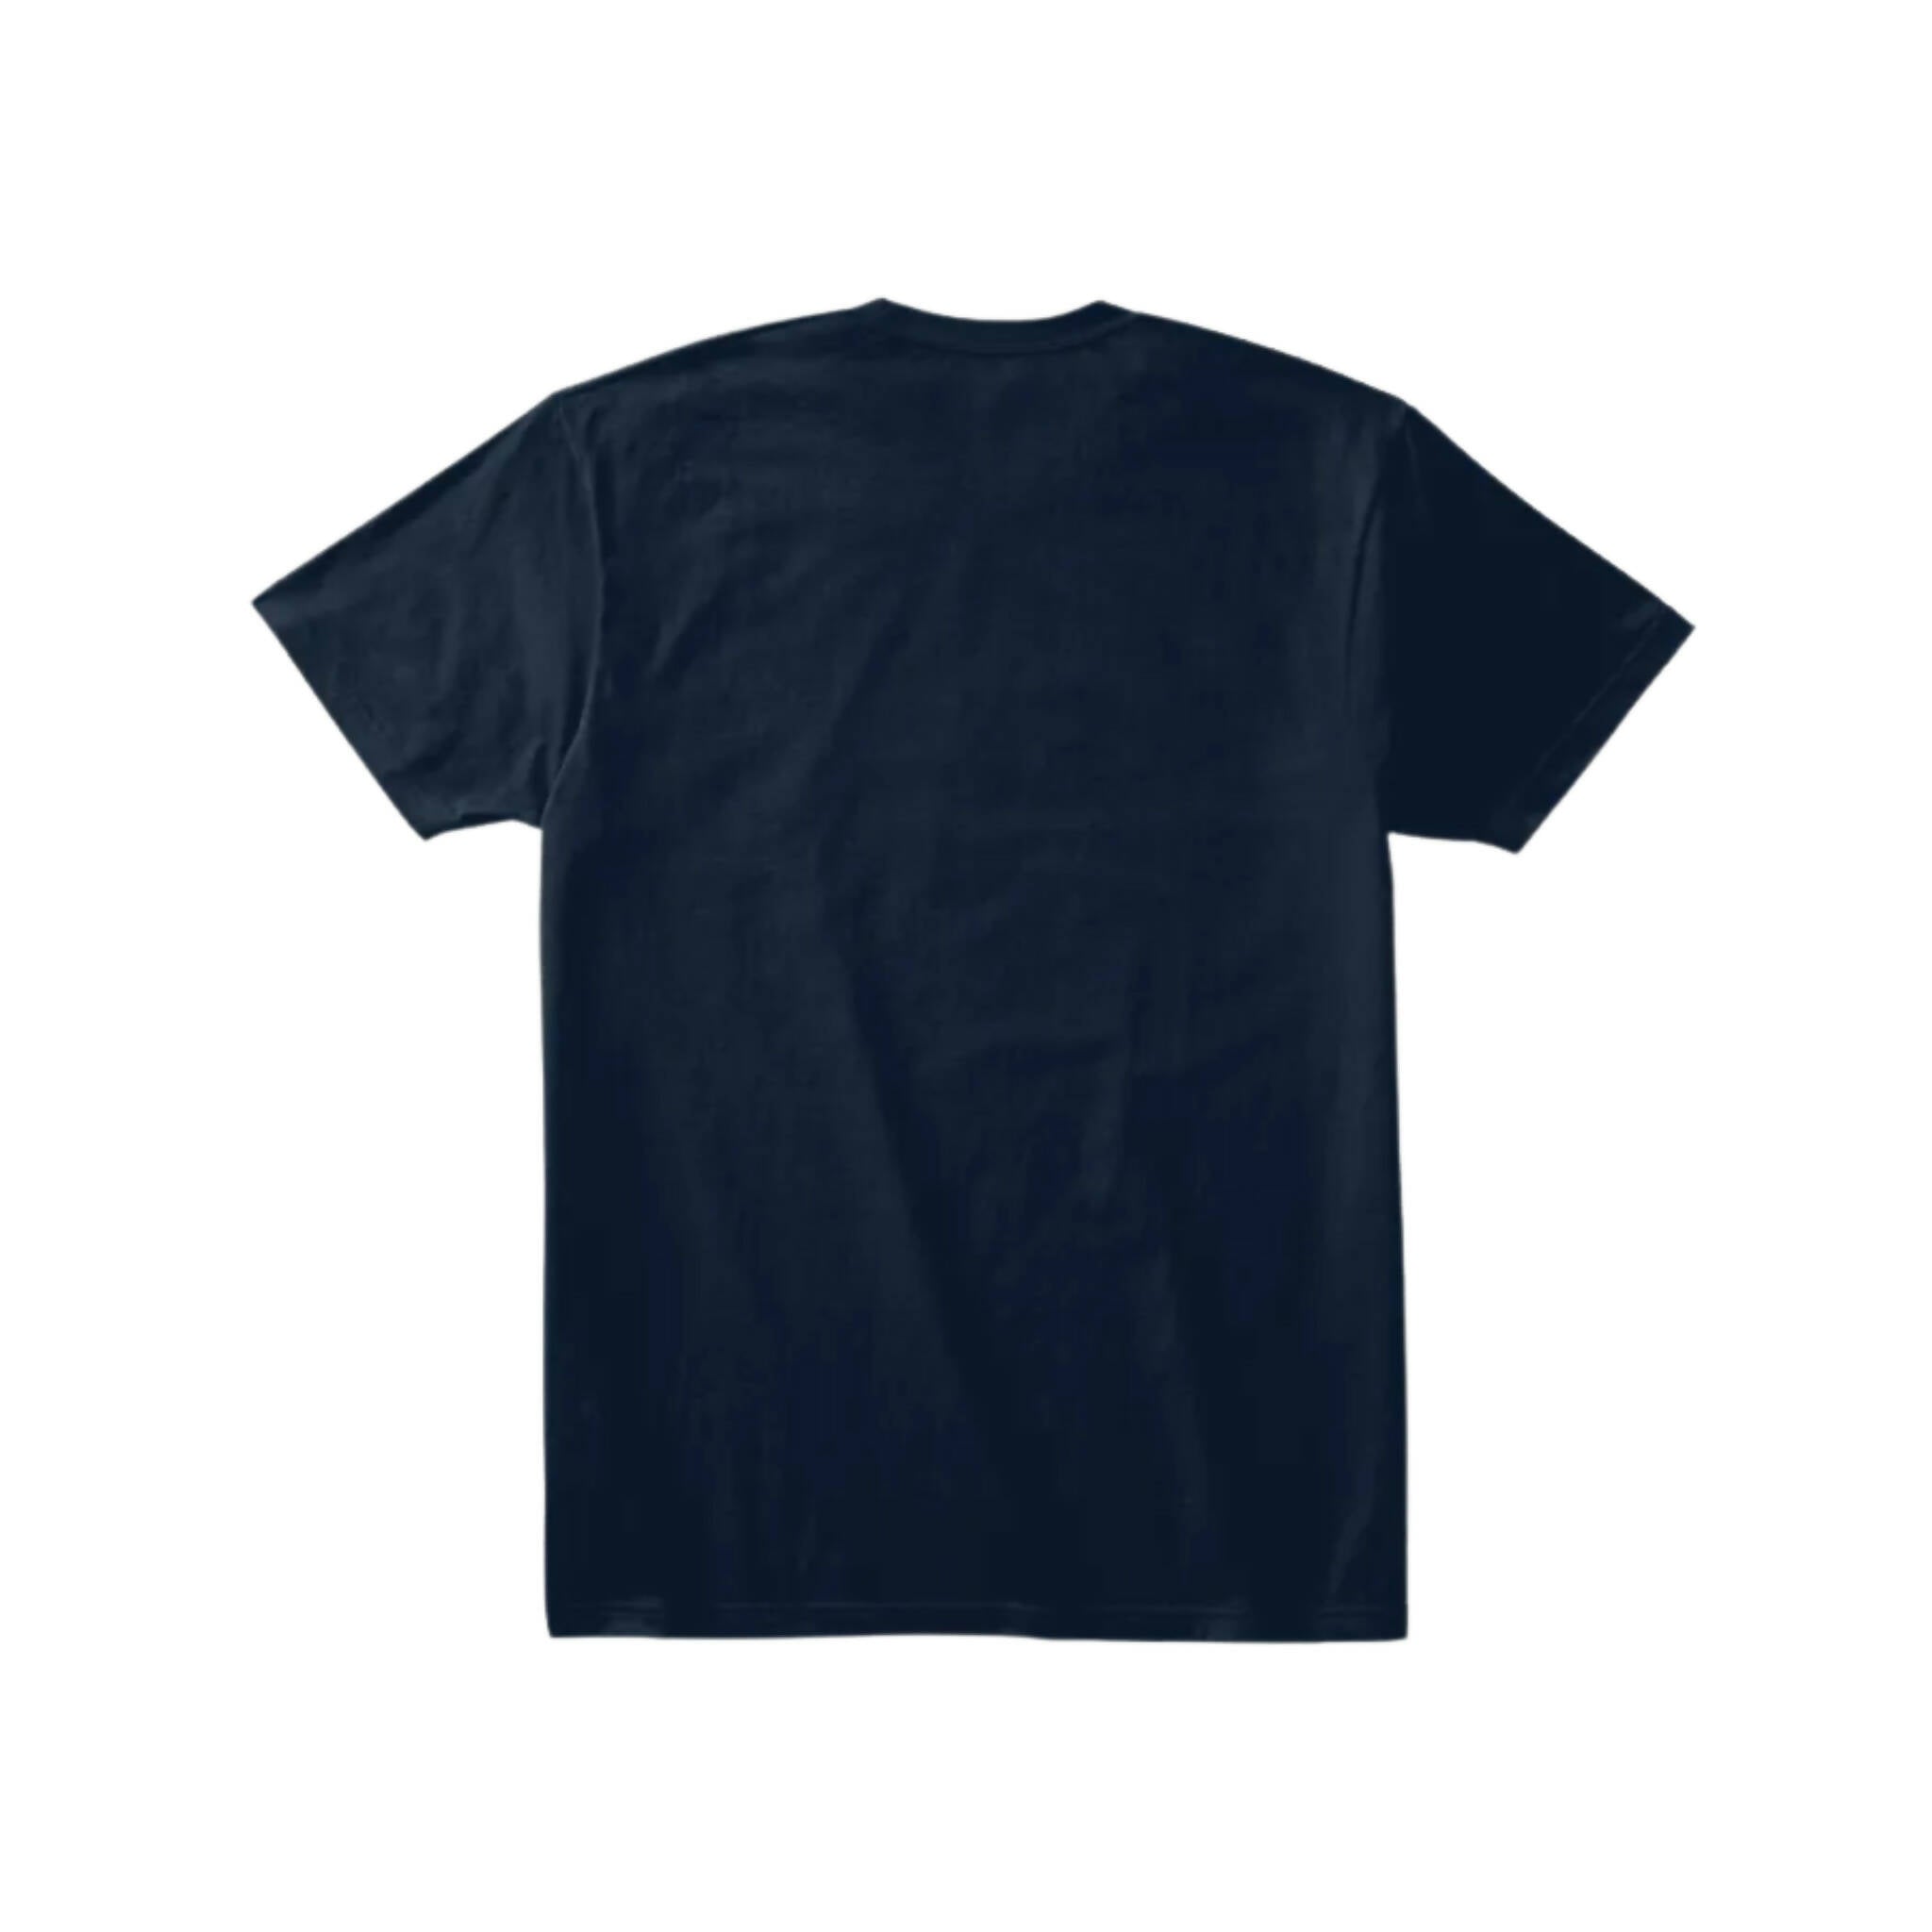 T-Shirt, Navy Blue & Short Sleeve, for Men